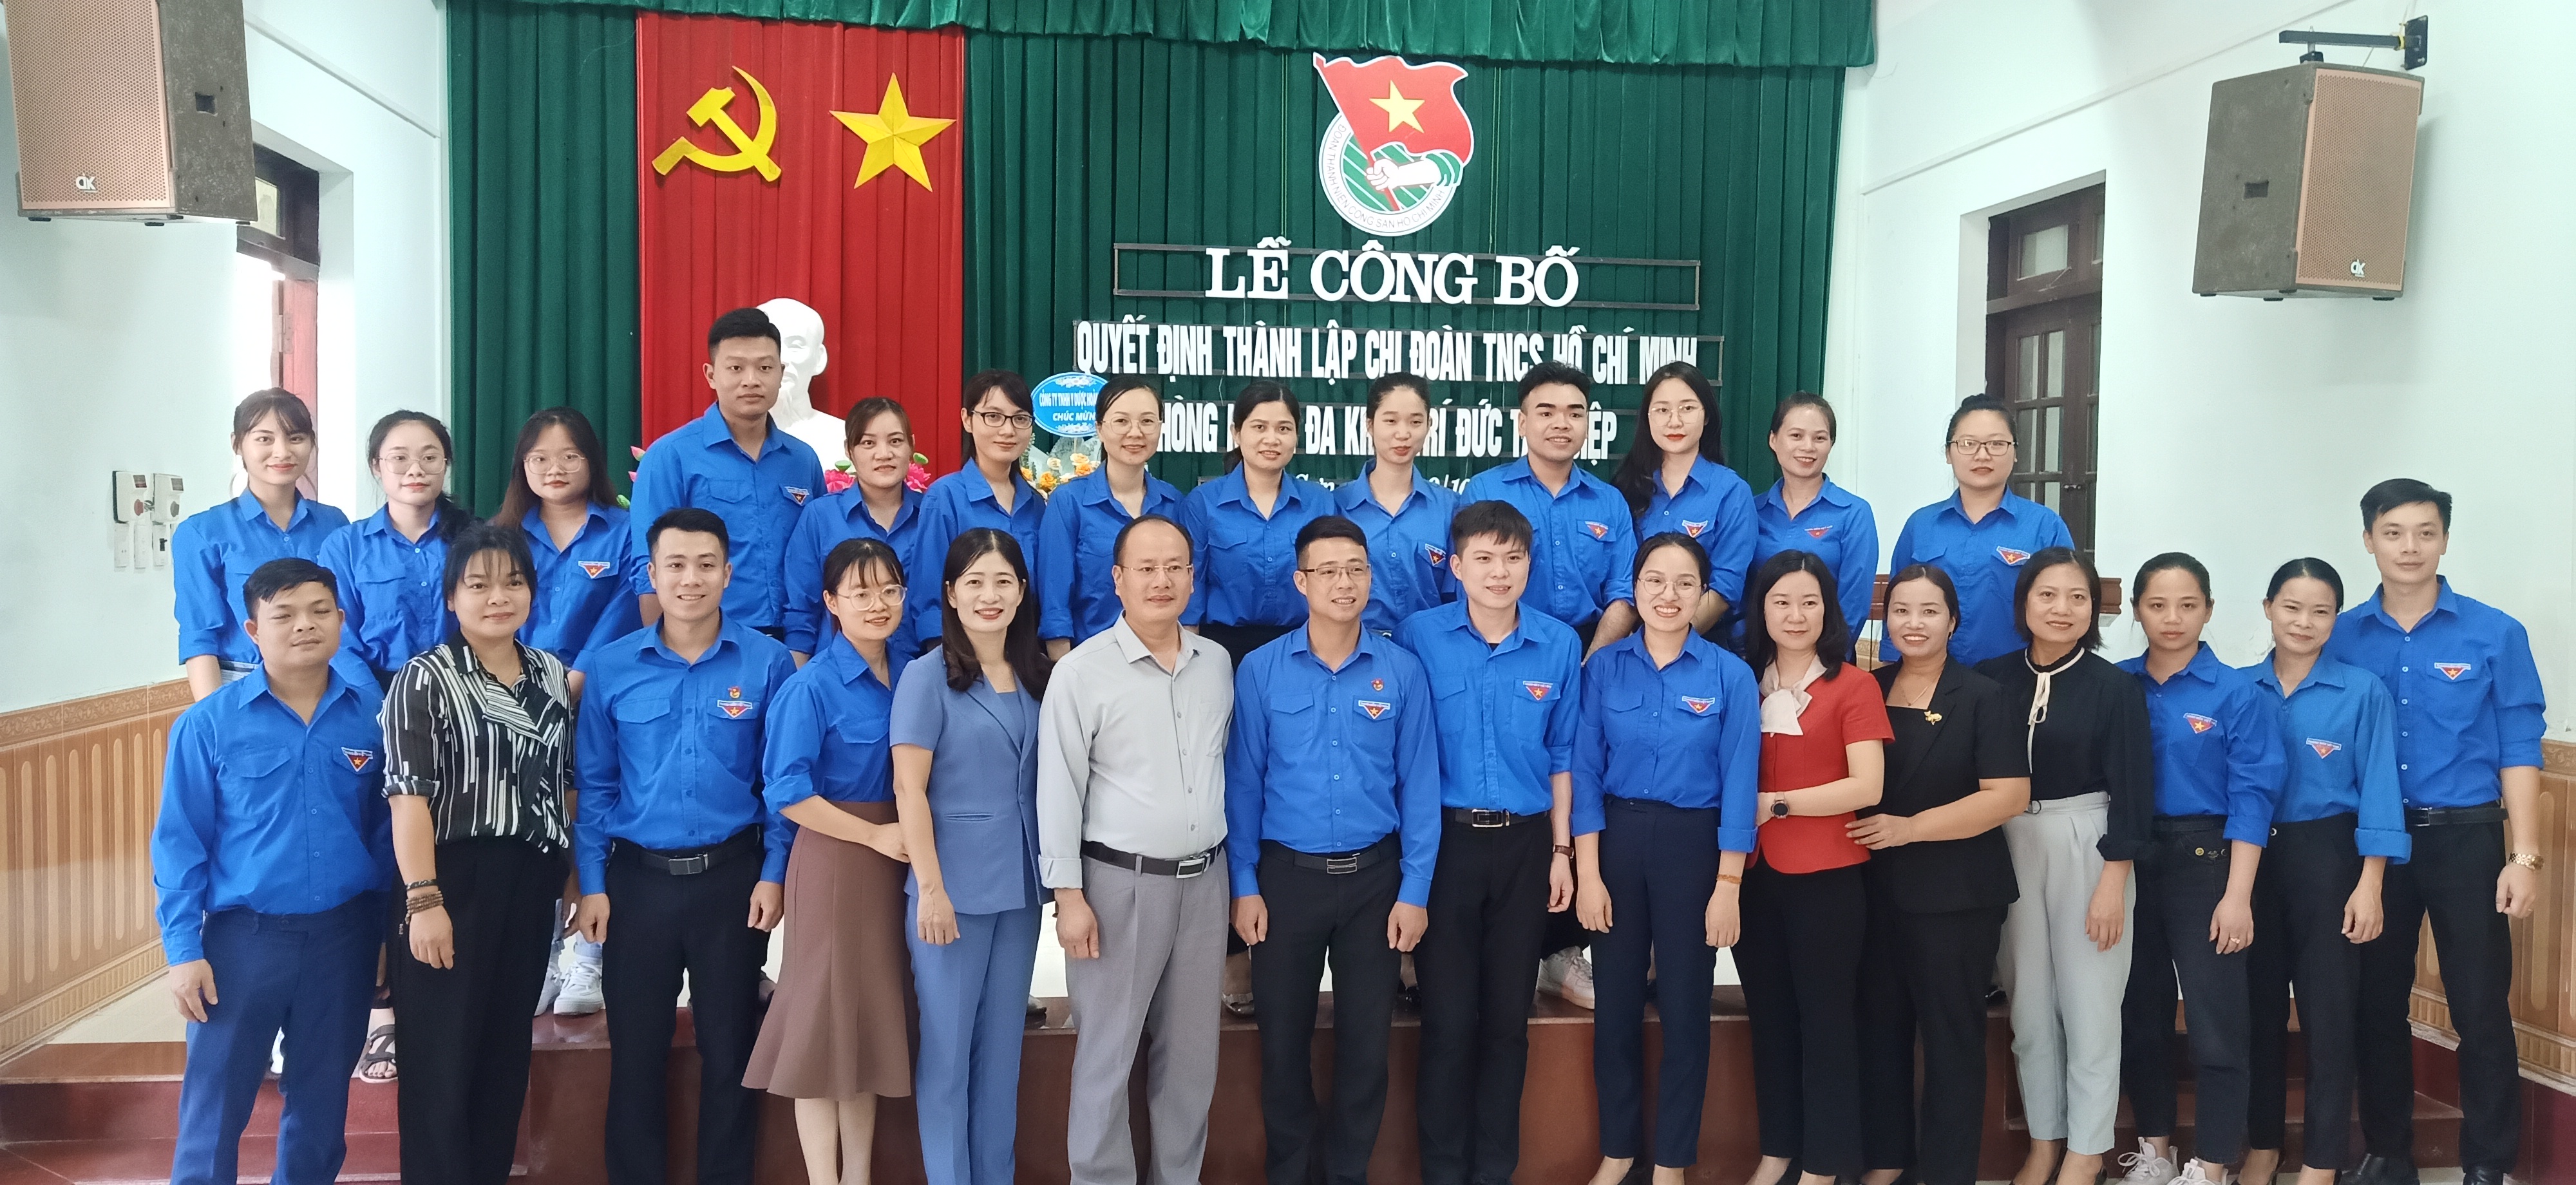 Lễ công bố quyết định thành lập Chi đoàn TNCS Hồ Chí Minh phòng khám đa khoa Trí Đức Tam Điệp